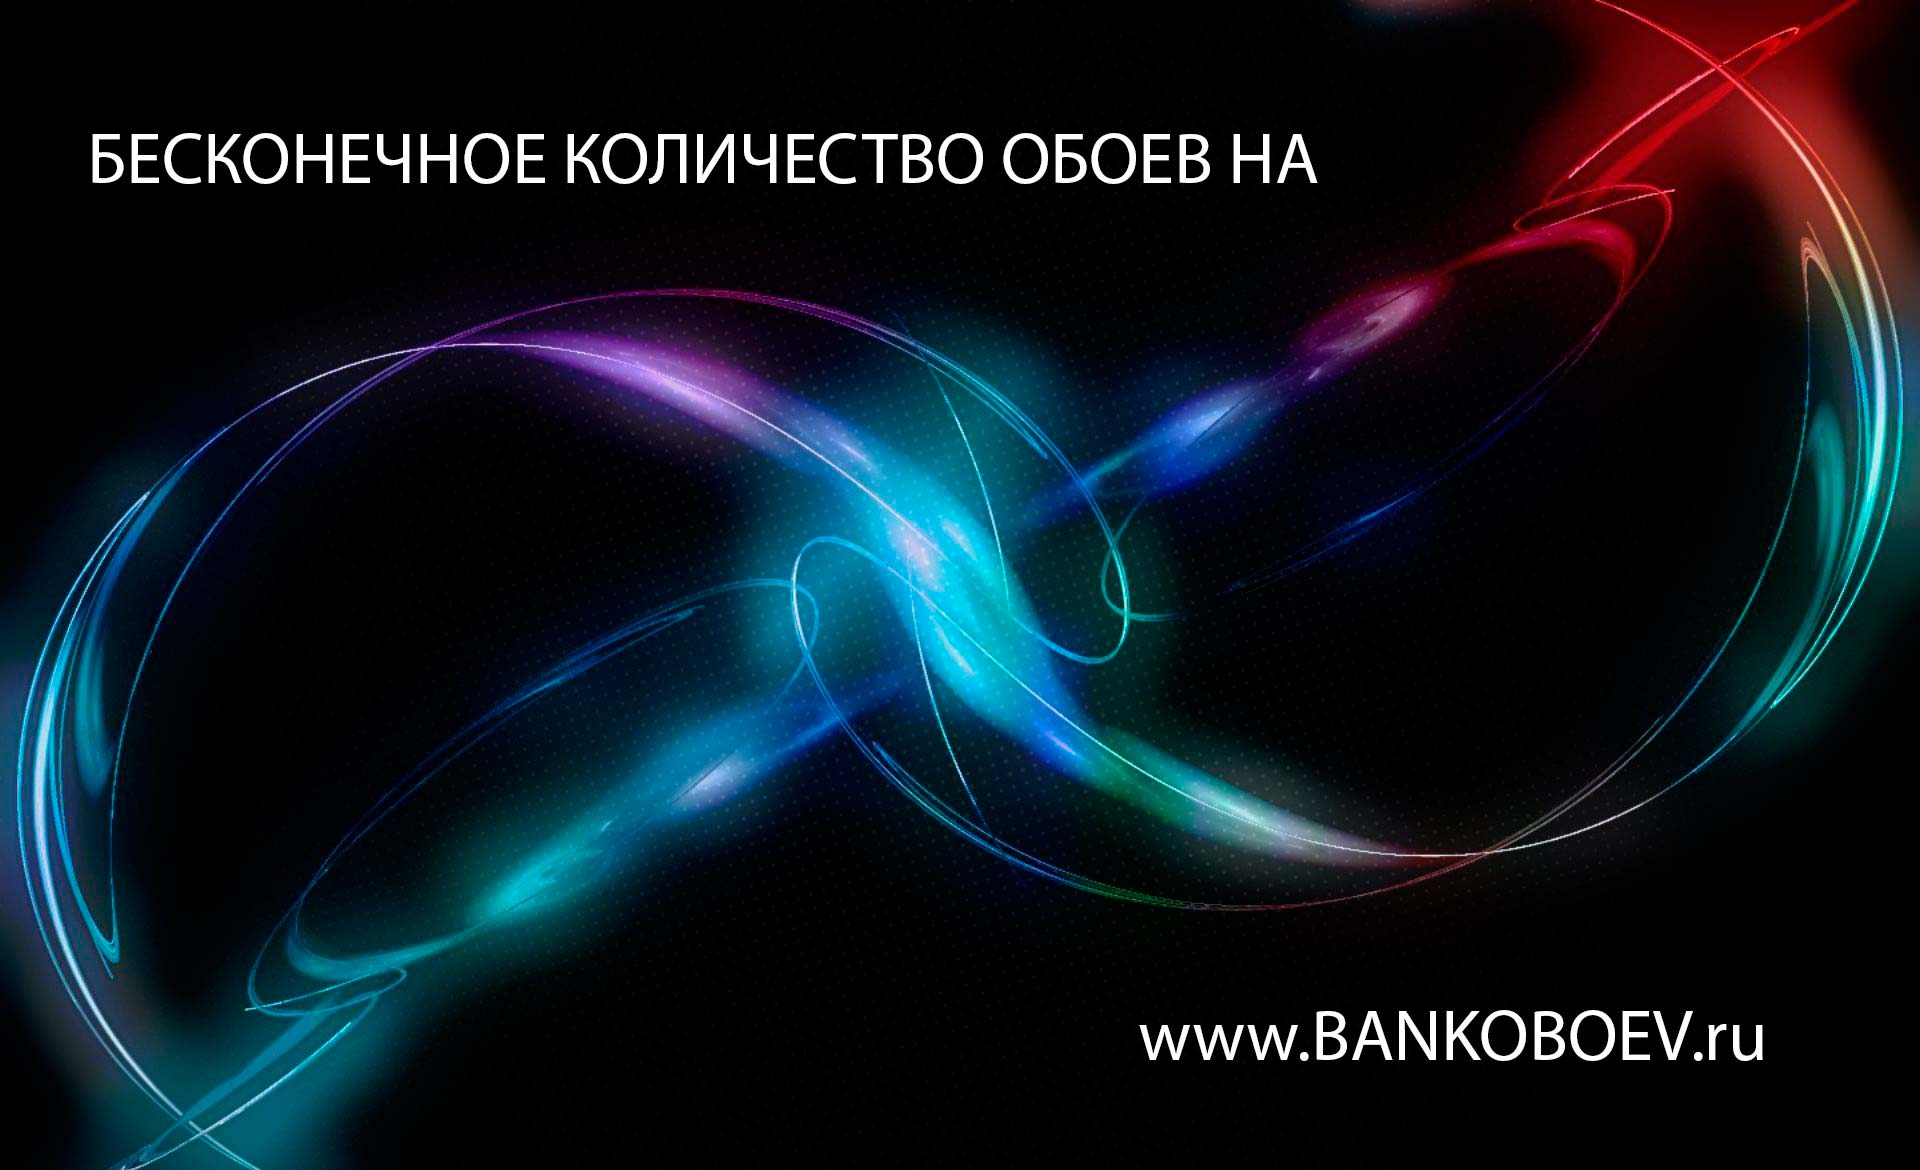 Bankoboev Ru Image Mze1nju4 Jpg